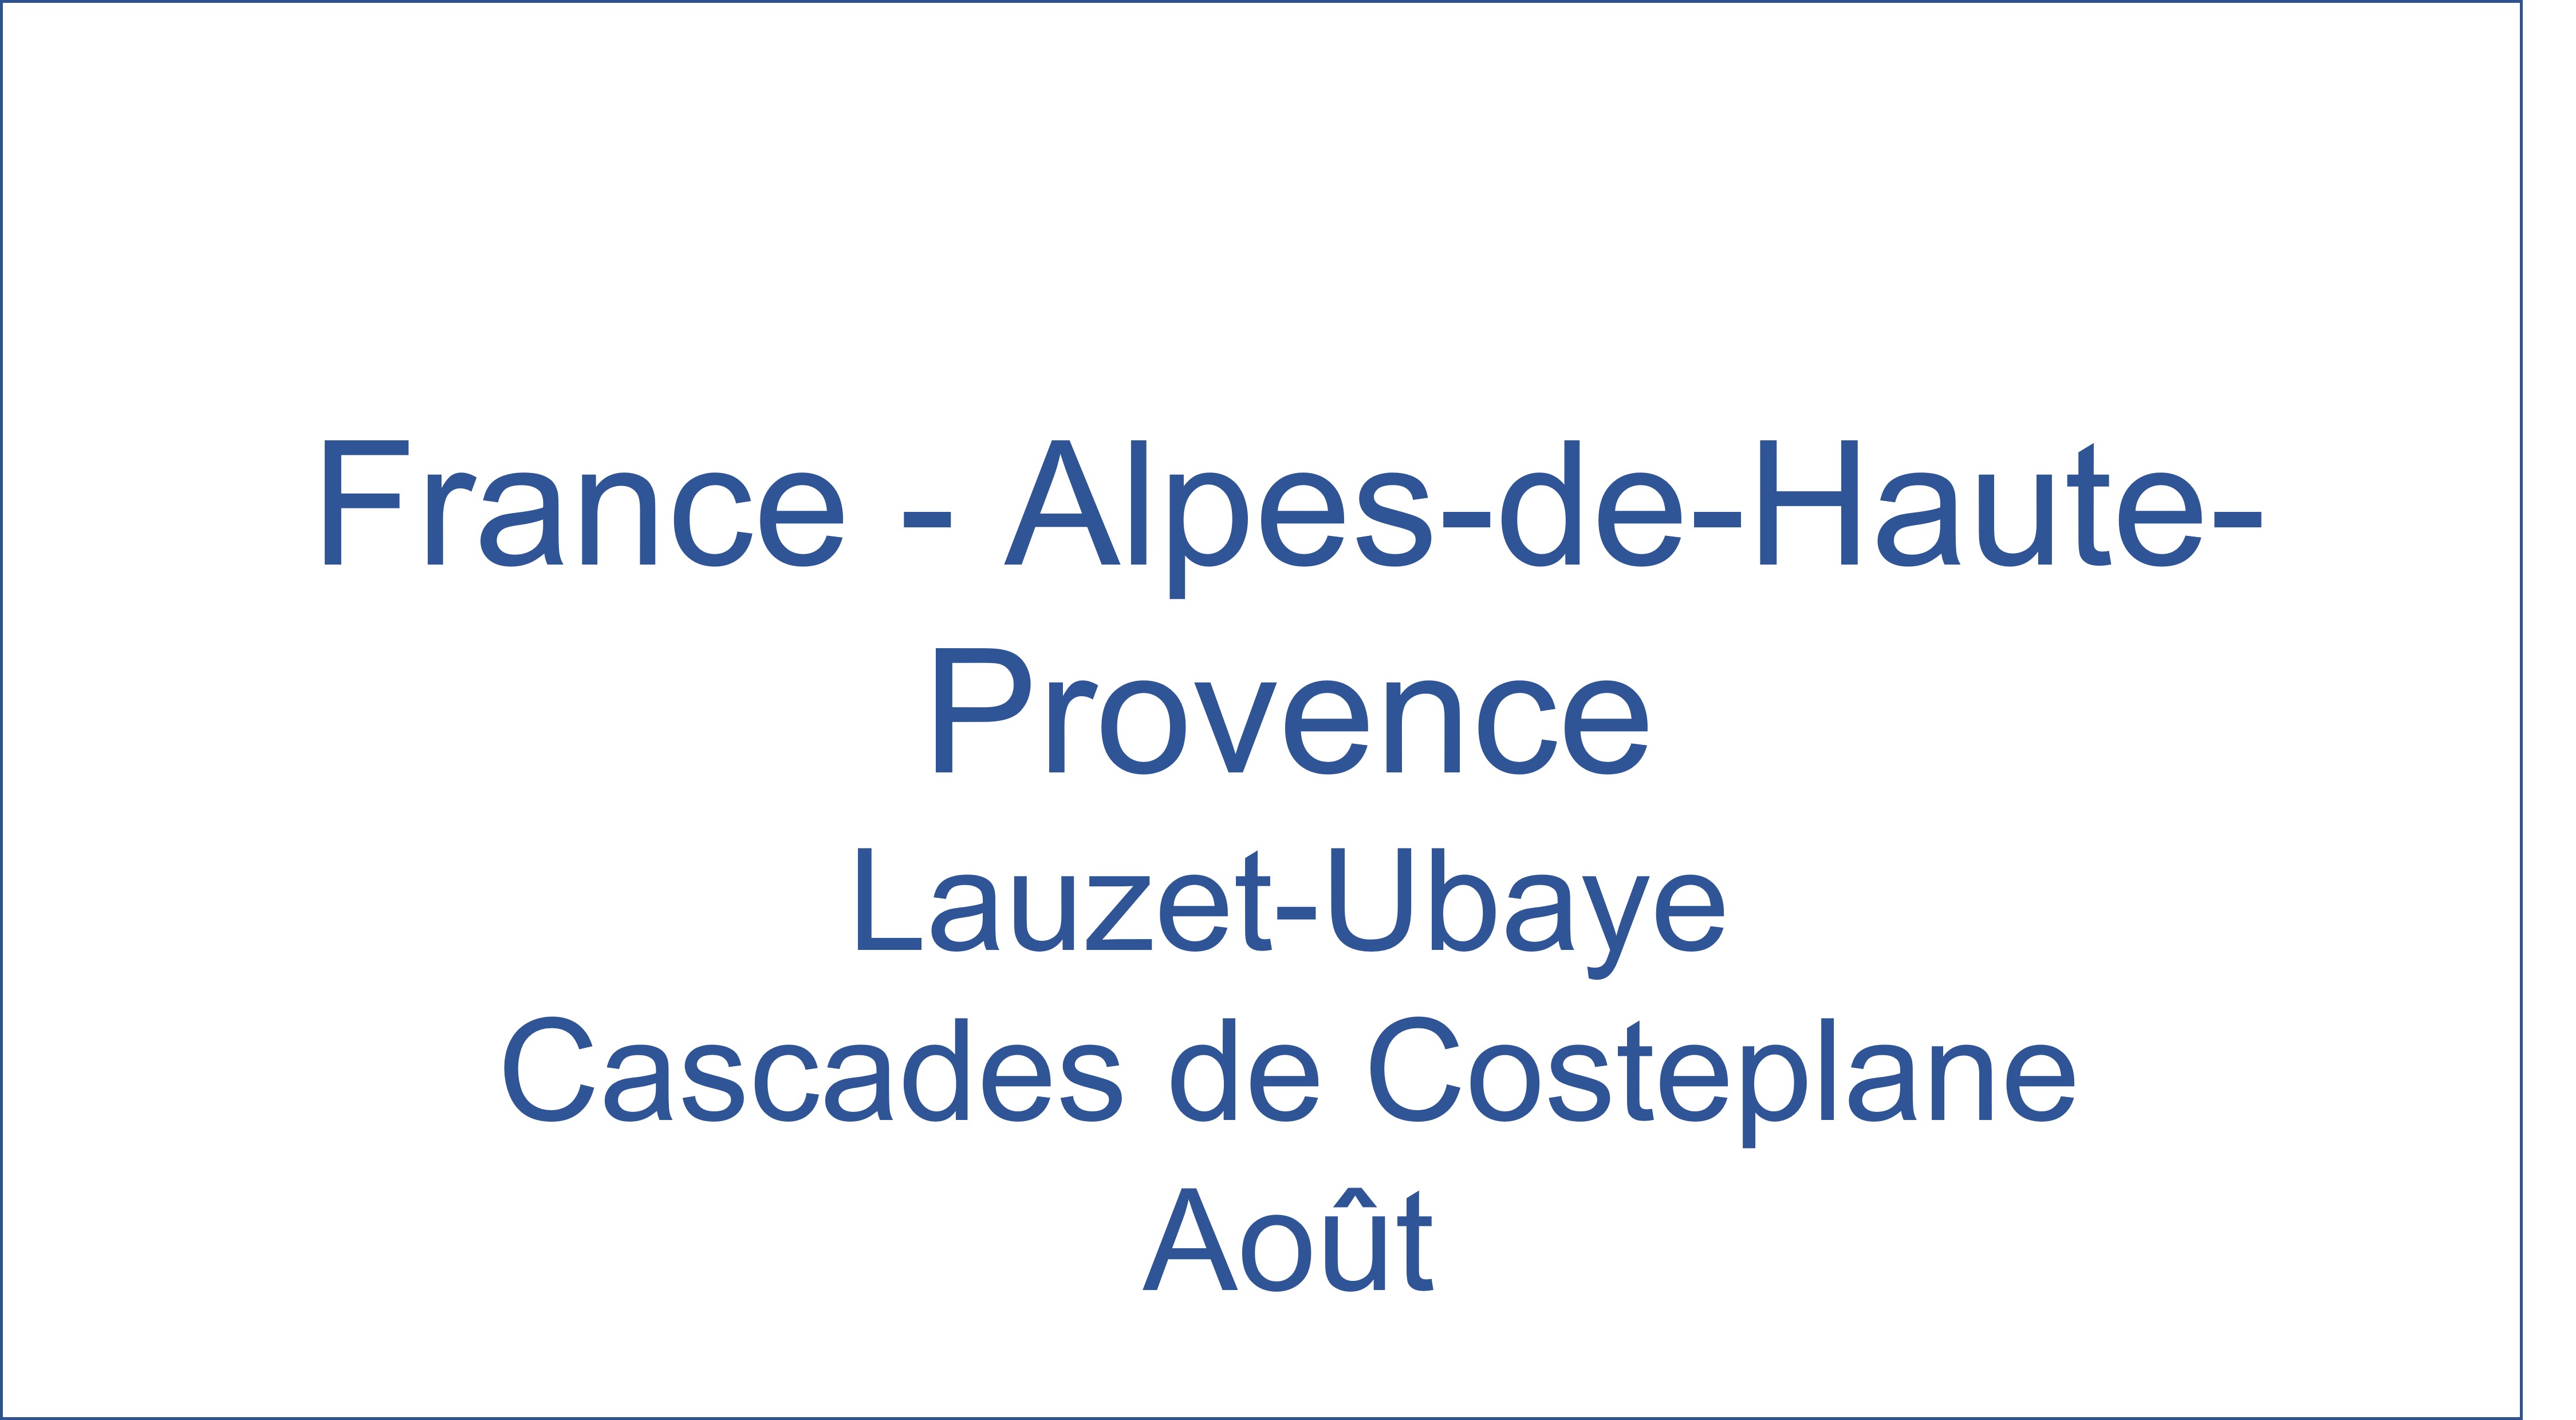 France - Alpes-de-Haute-Provence Lauzet-Ubaye Cascades De Costeplane 08/2021